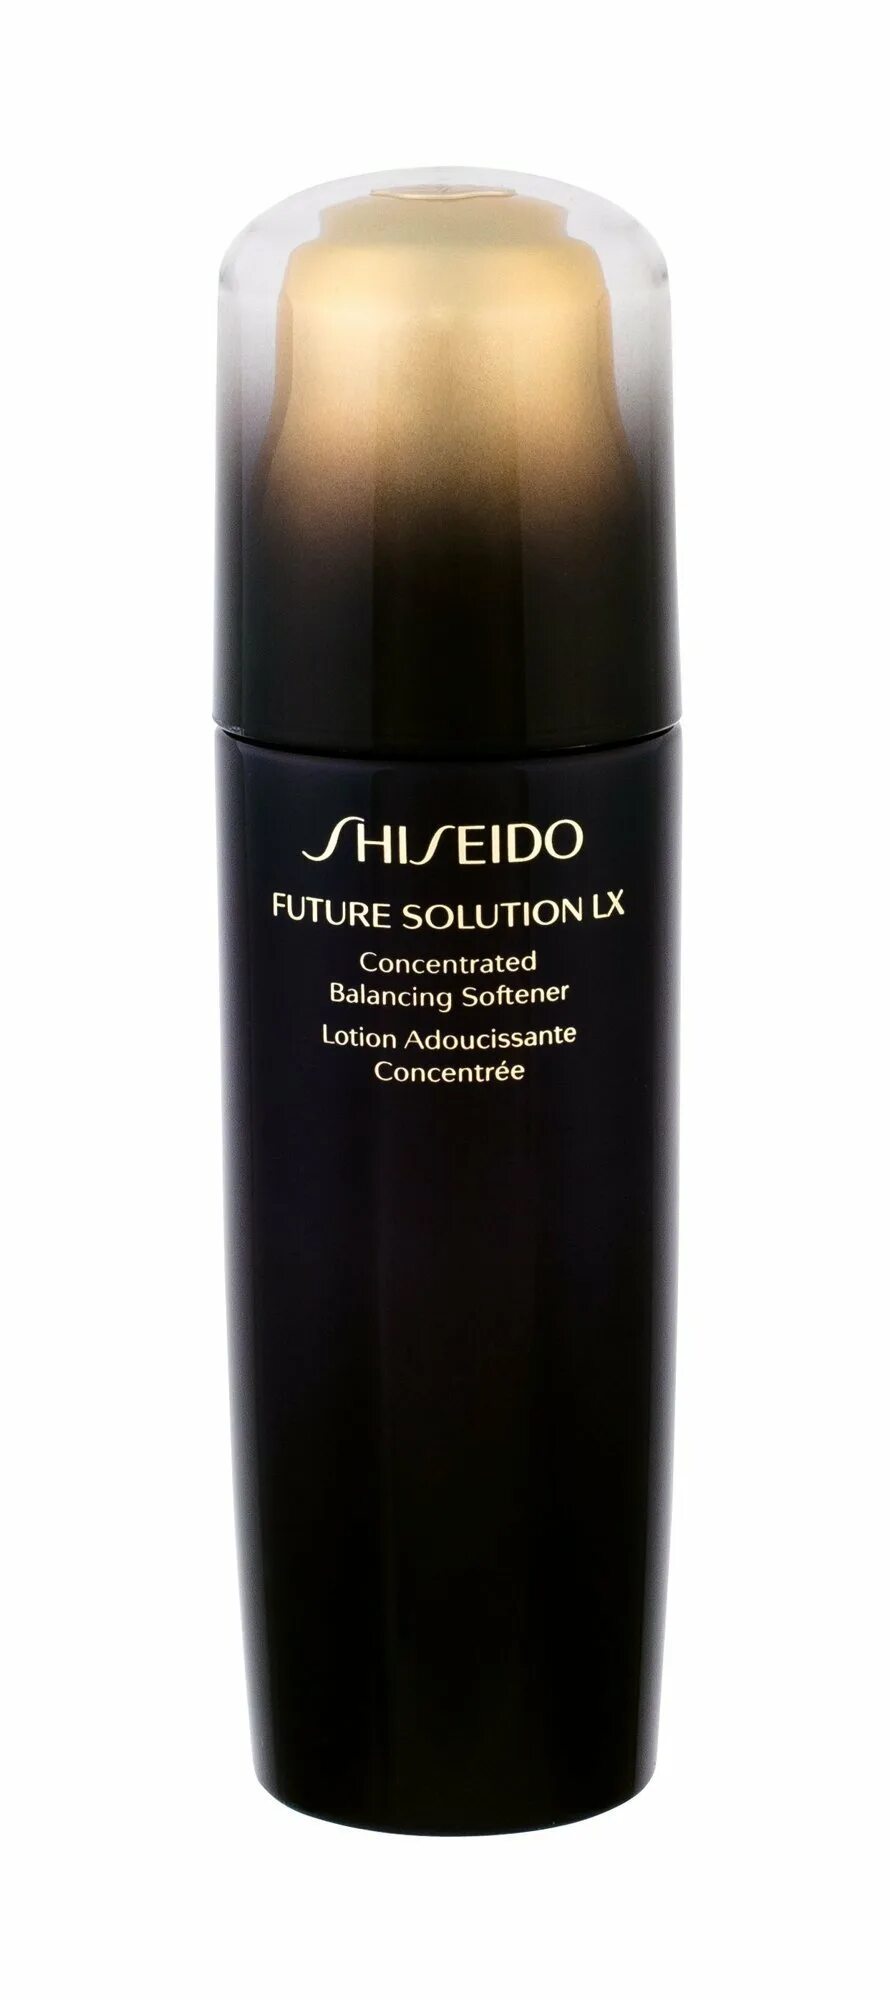 Купить софтнер для лица Shiseido Future solution LX concentrated Balancing Softener. Shiseido Future solution отзывы. Shiseido концентрированный балансирующий софтнер e Future solution LX отзывы.